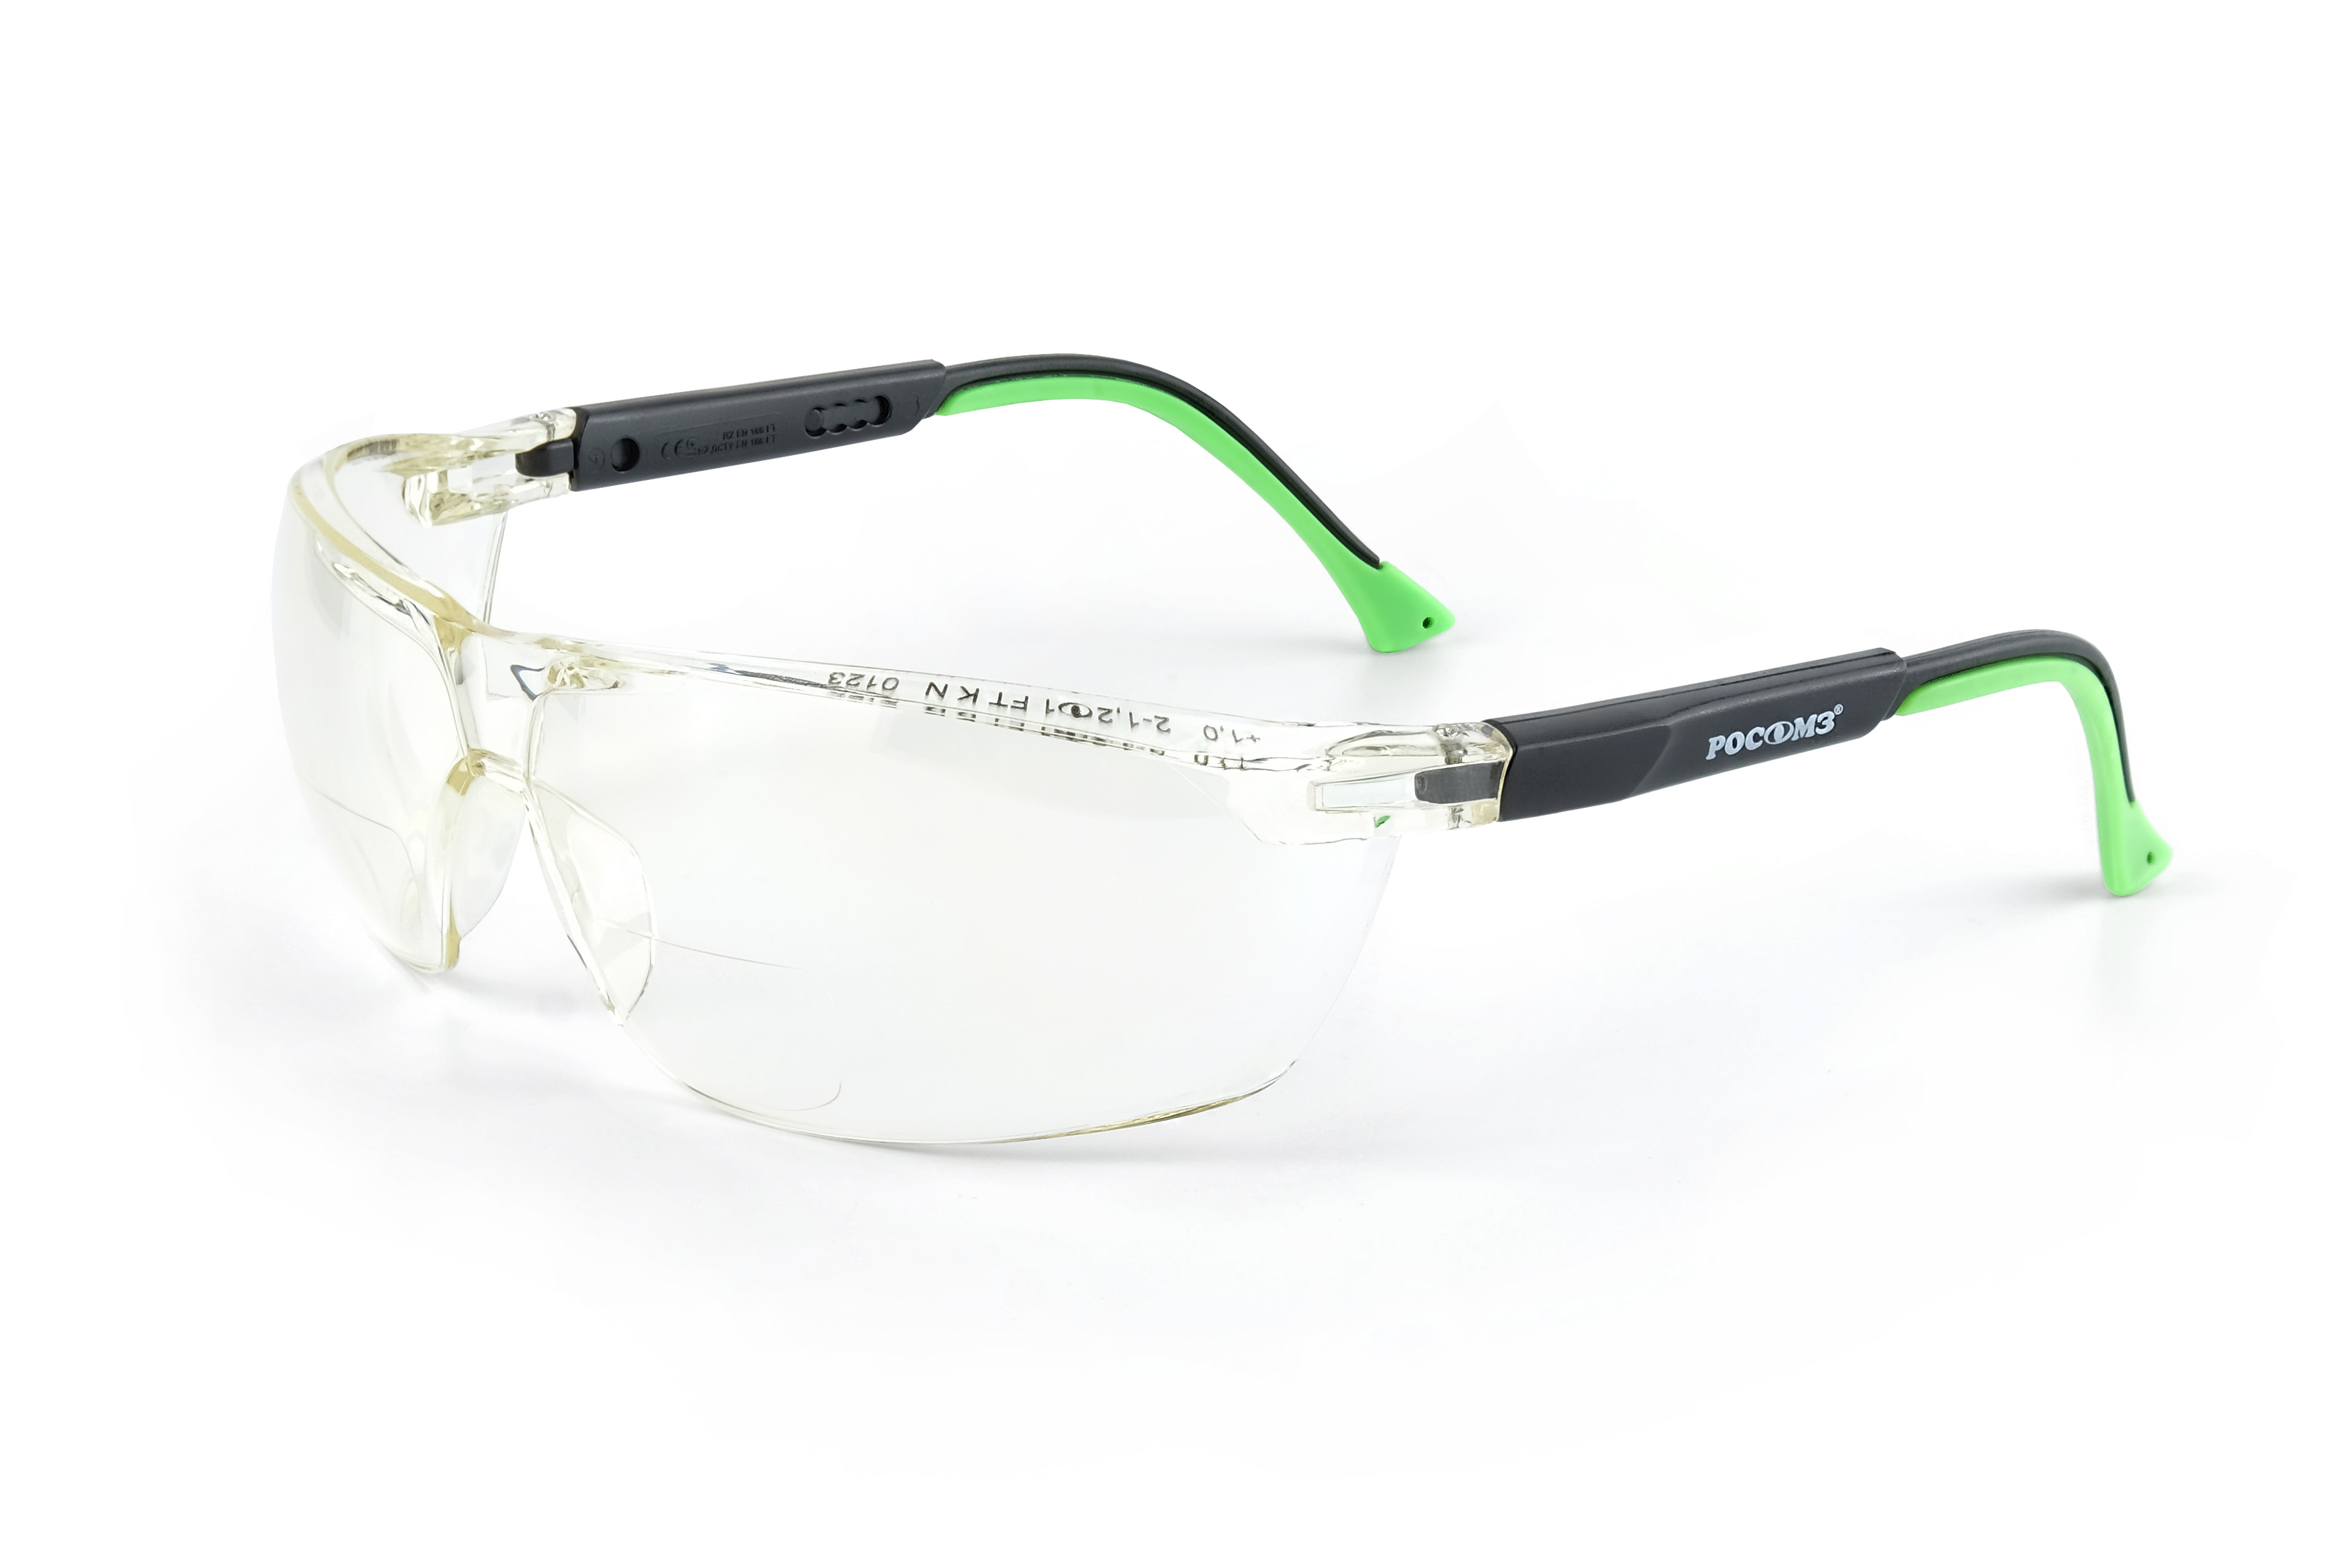 О78 АБСОЛЮТ plus Strong Glass (2-1,2 РС) очки защитные открытые (рефракция +1,0 дптр)